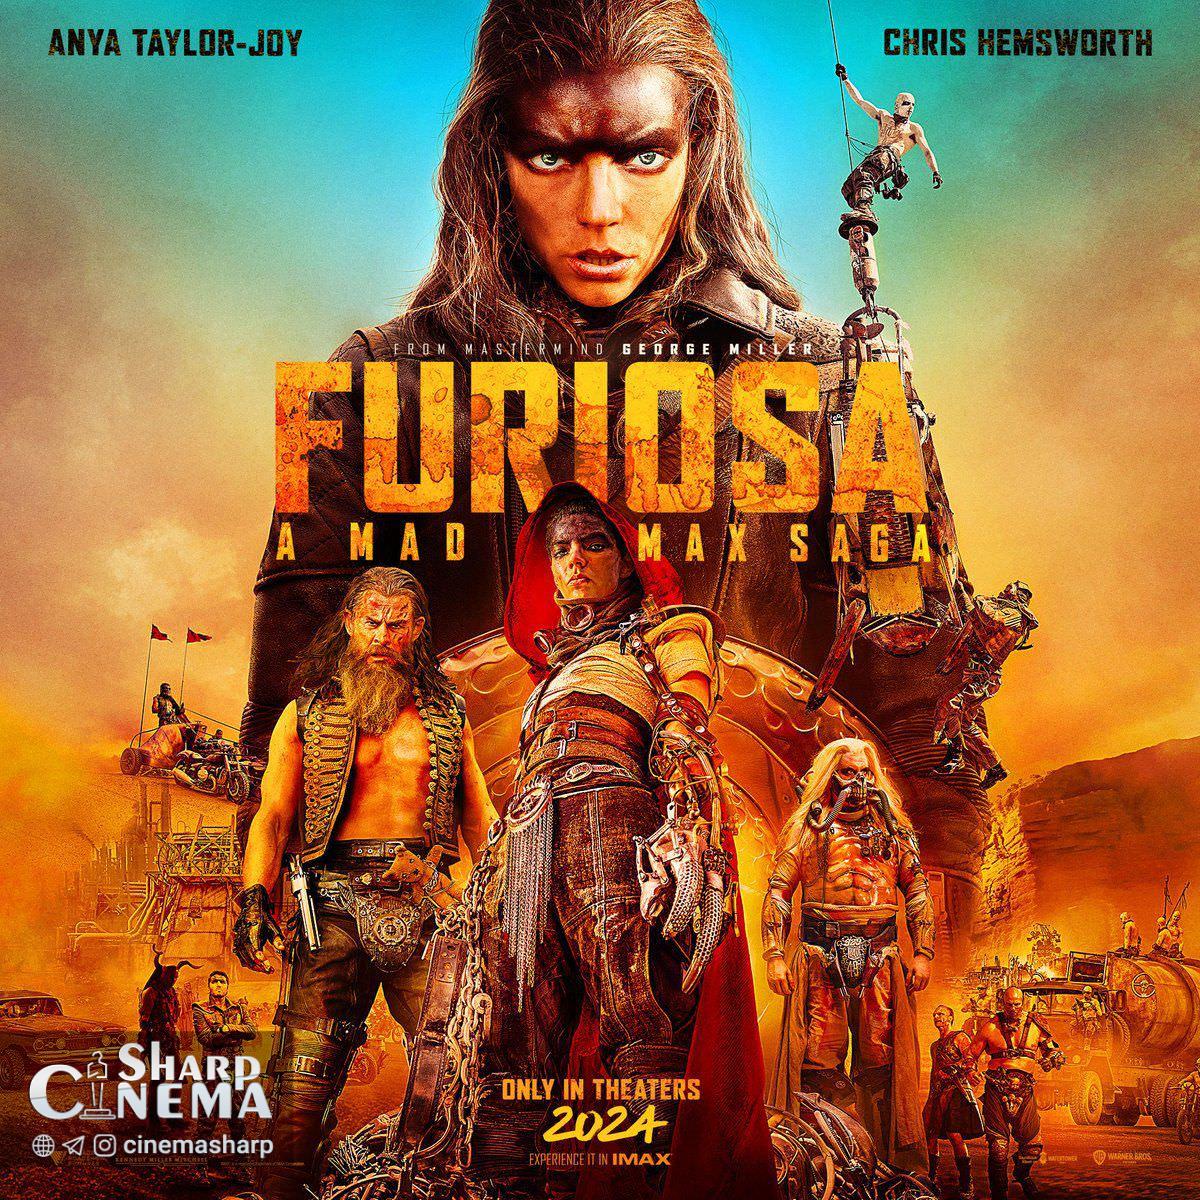 پوستر فیلم Furiosa با ظاهری متفاوت آنیا تیلور جوی